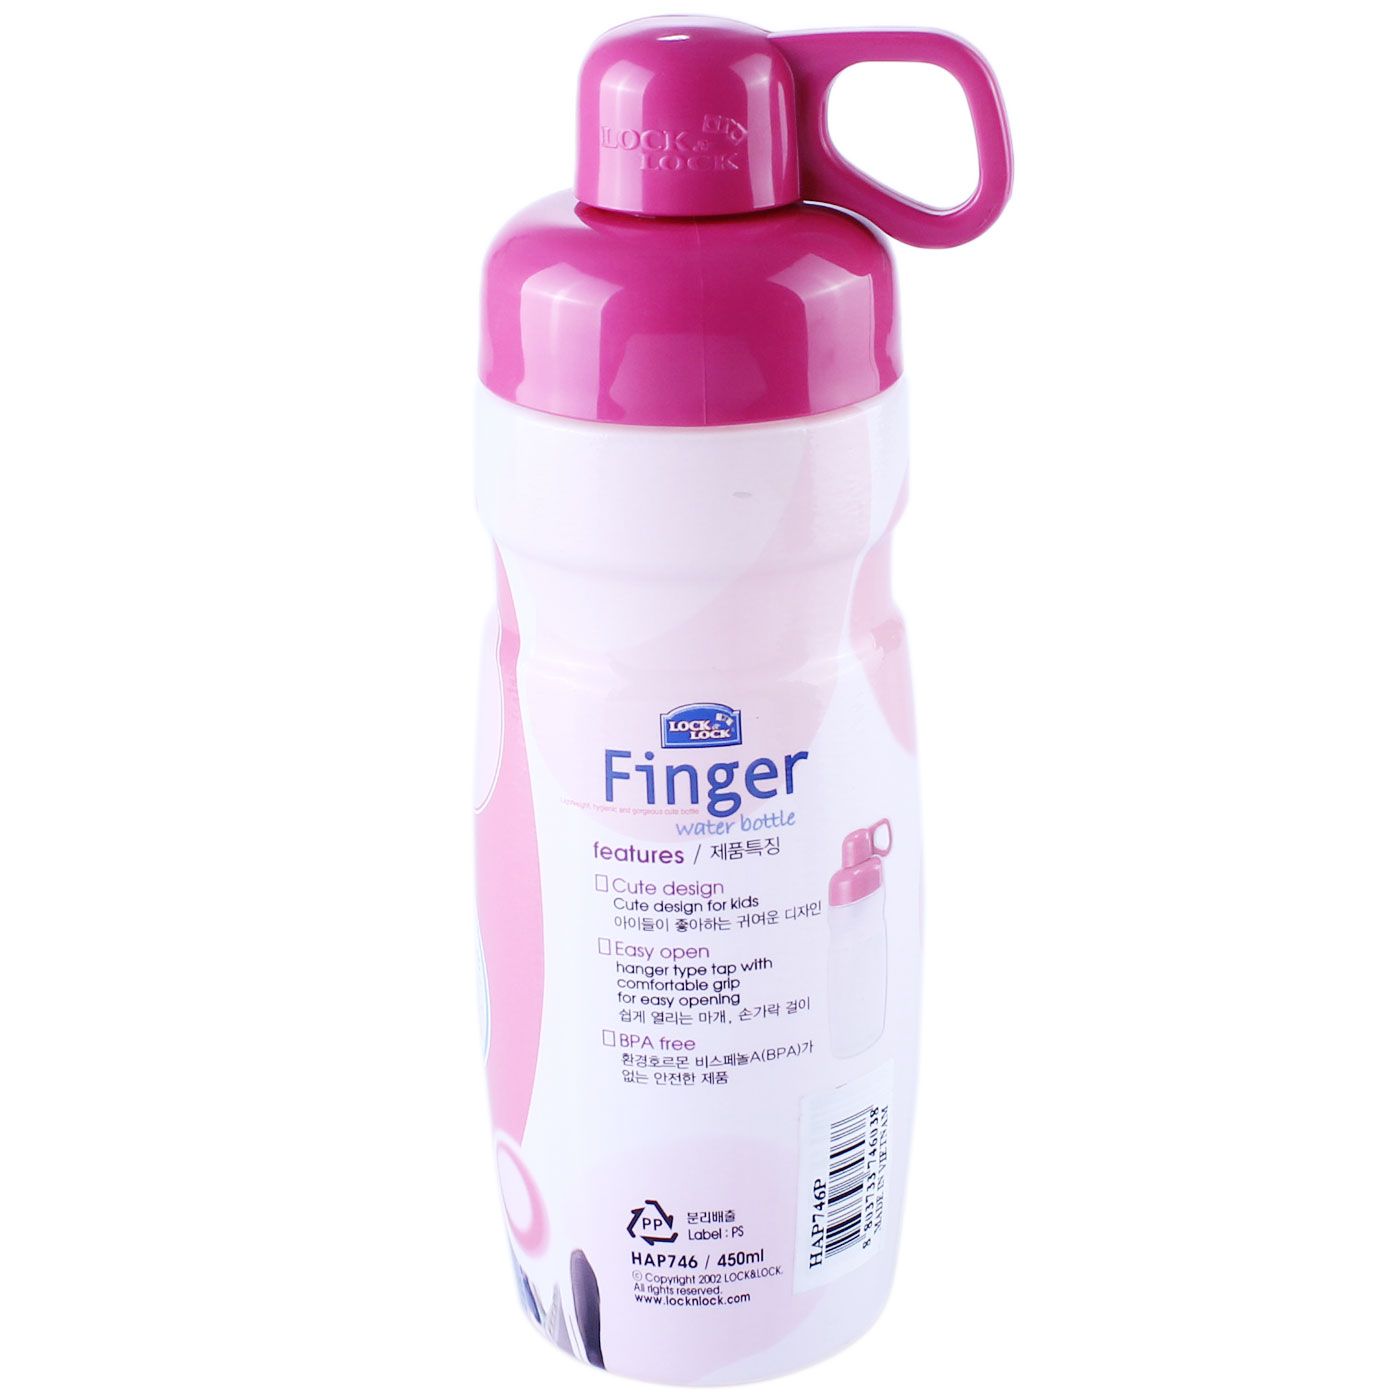 Lock & Lock Finger Water Bottle 450ml Pink - 3